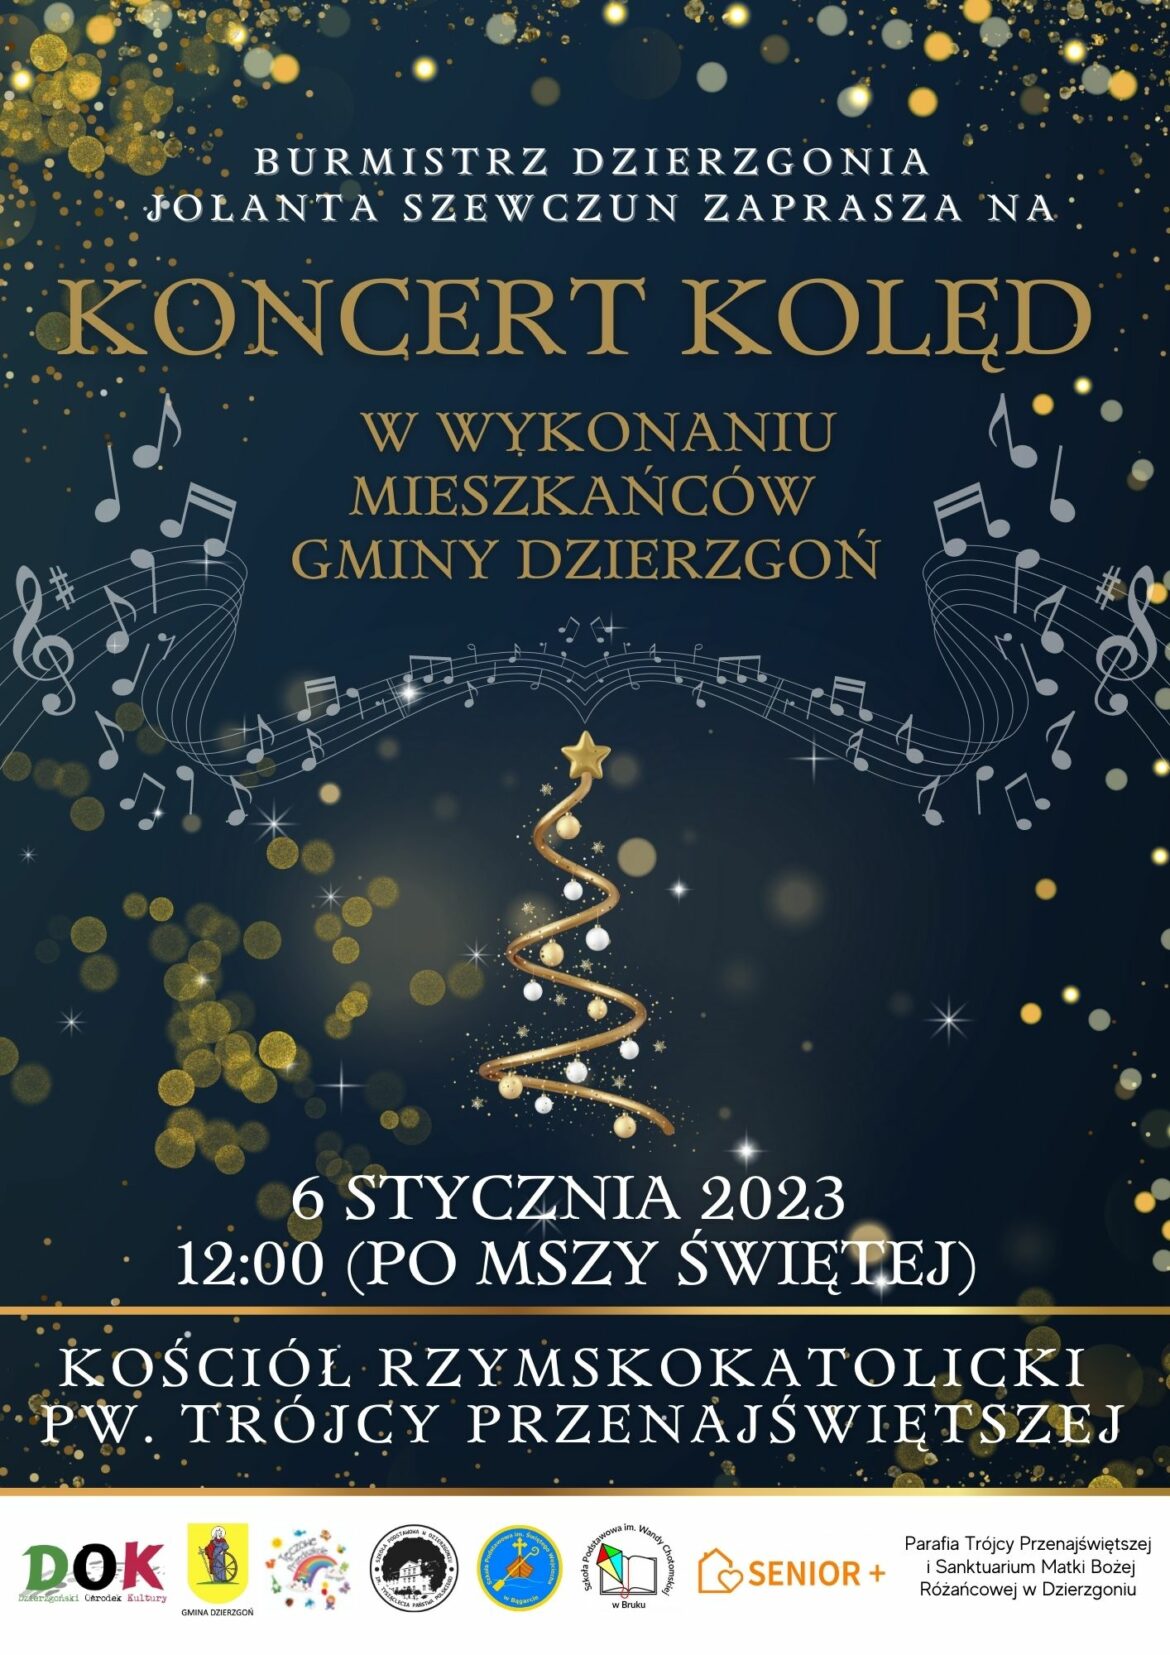 Koncert Kolęd w wykonaniu mieszkańców naszej gminy już 6 stycznia!